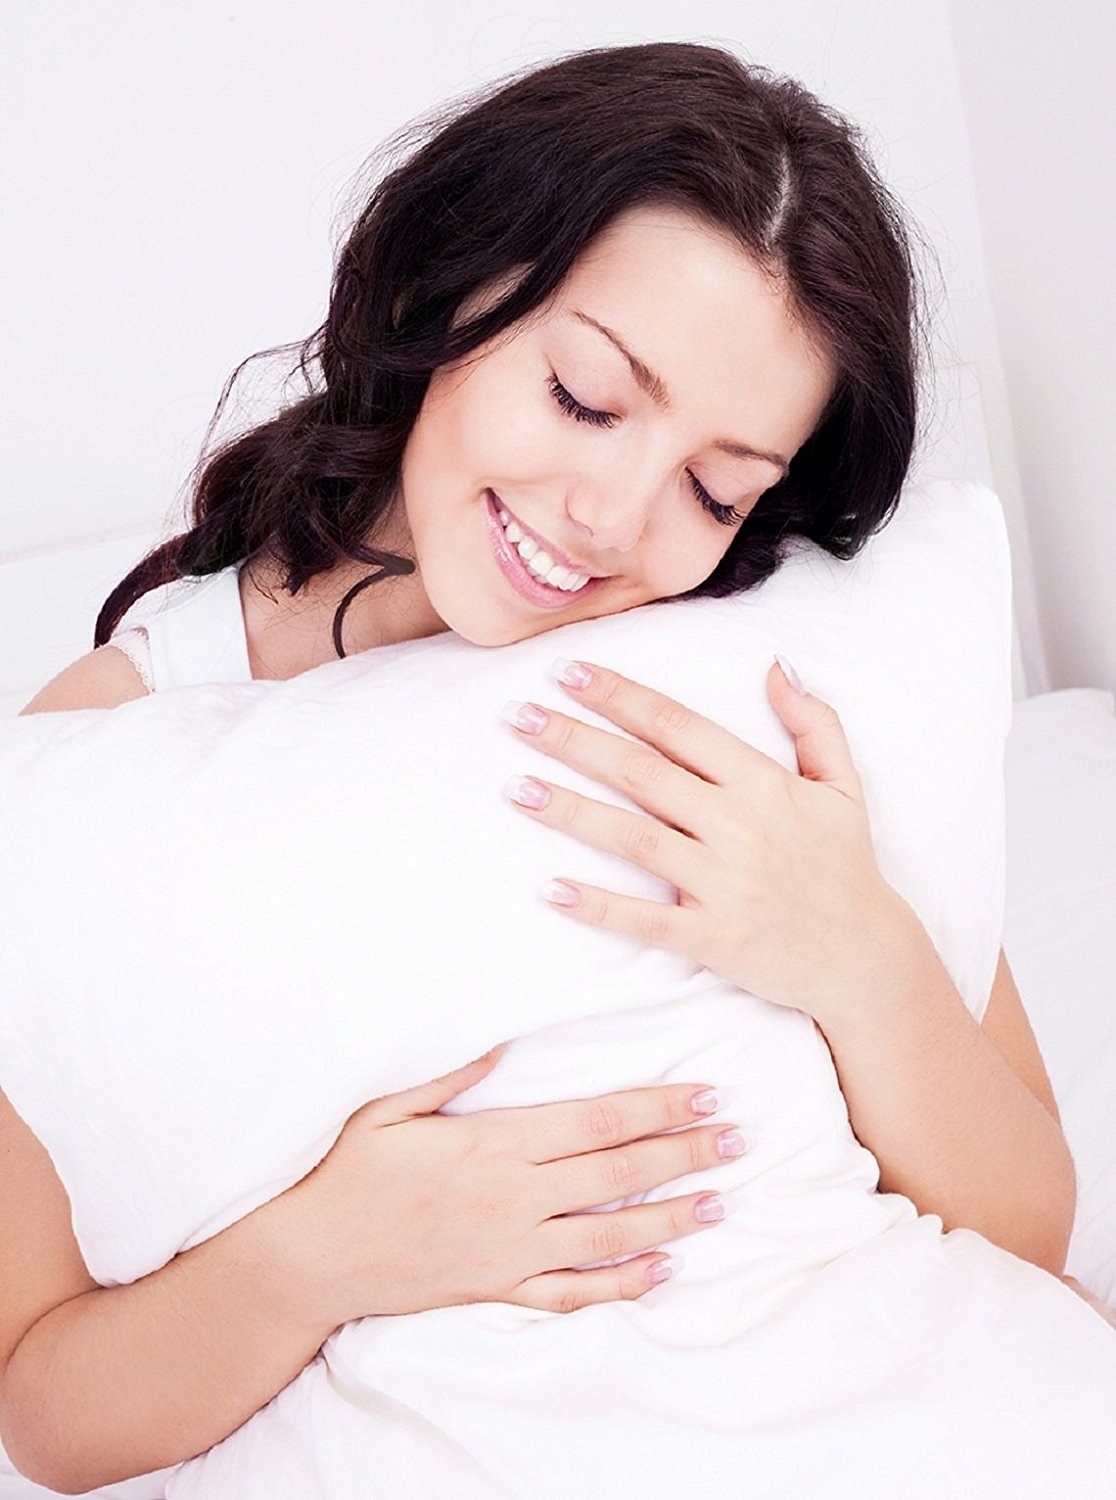 A woman hugging a pillow 